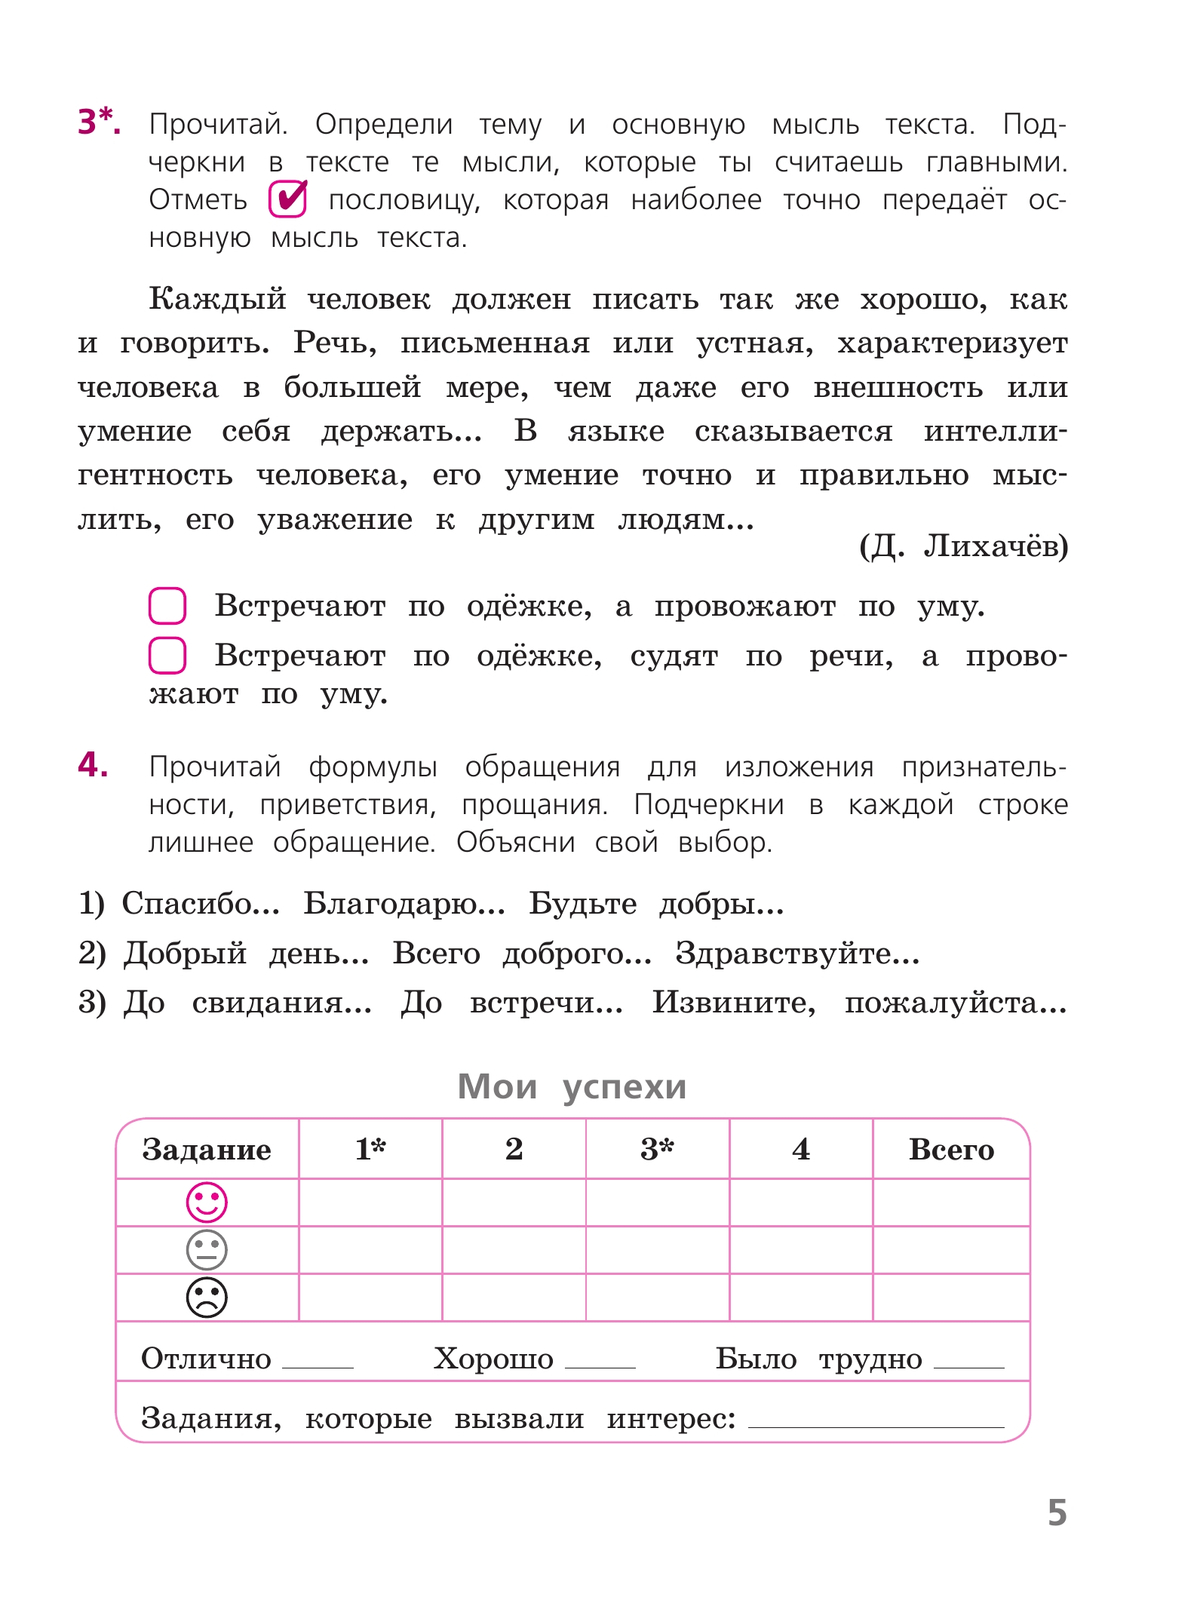 Русский язык. Тетрадь учебных достижений. 4 класс 8